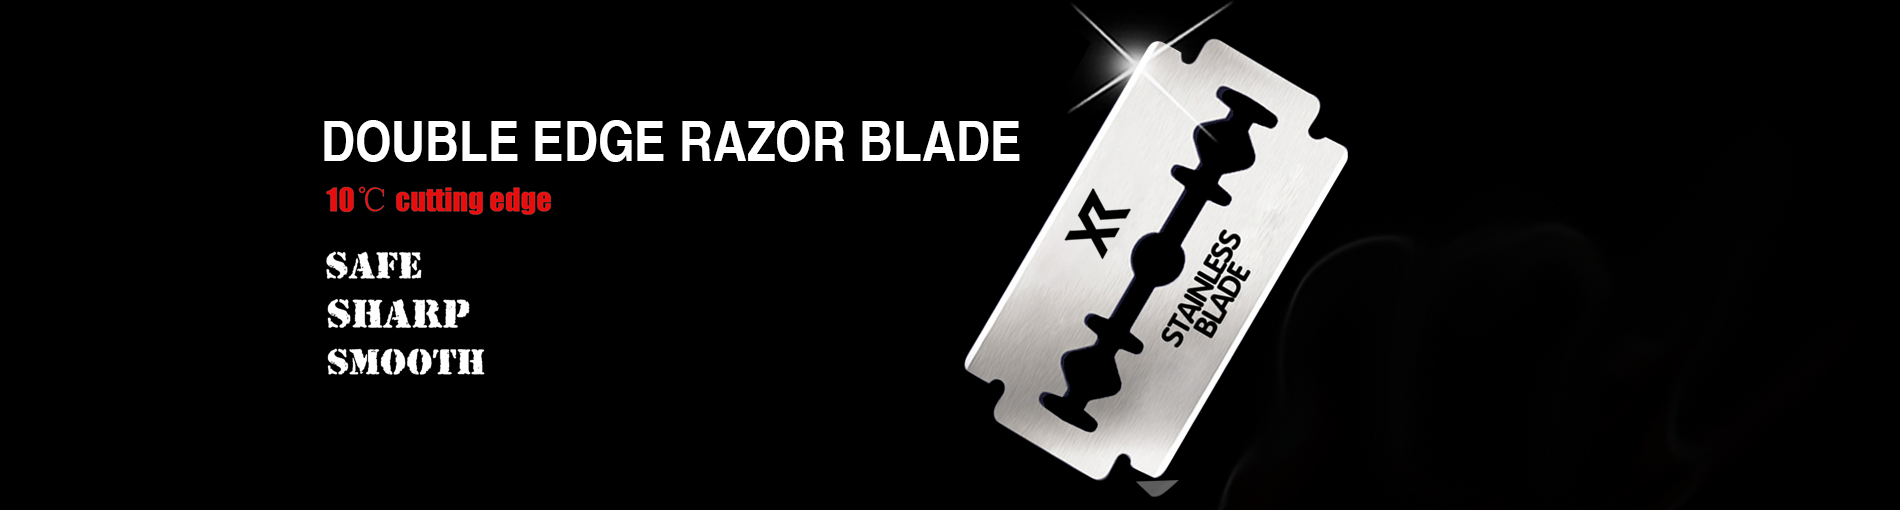 Double Edge Razor Blade